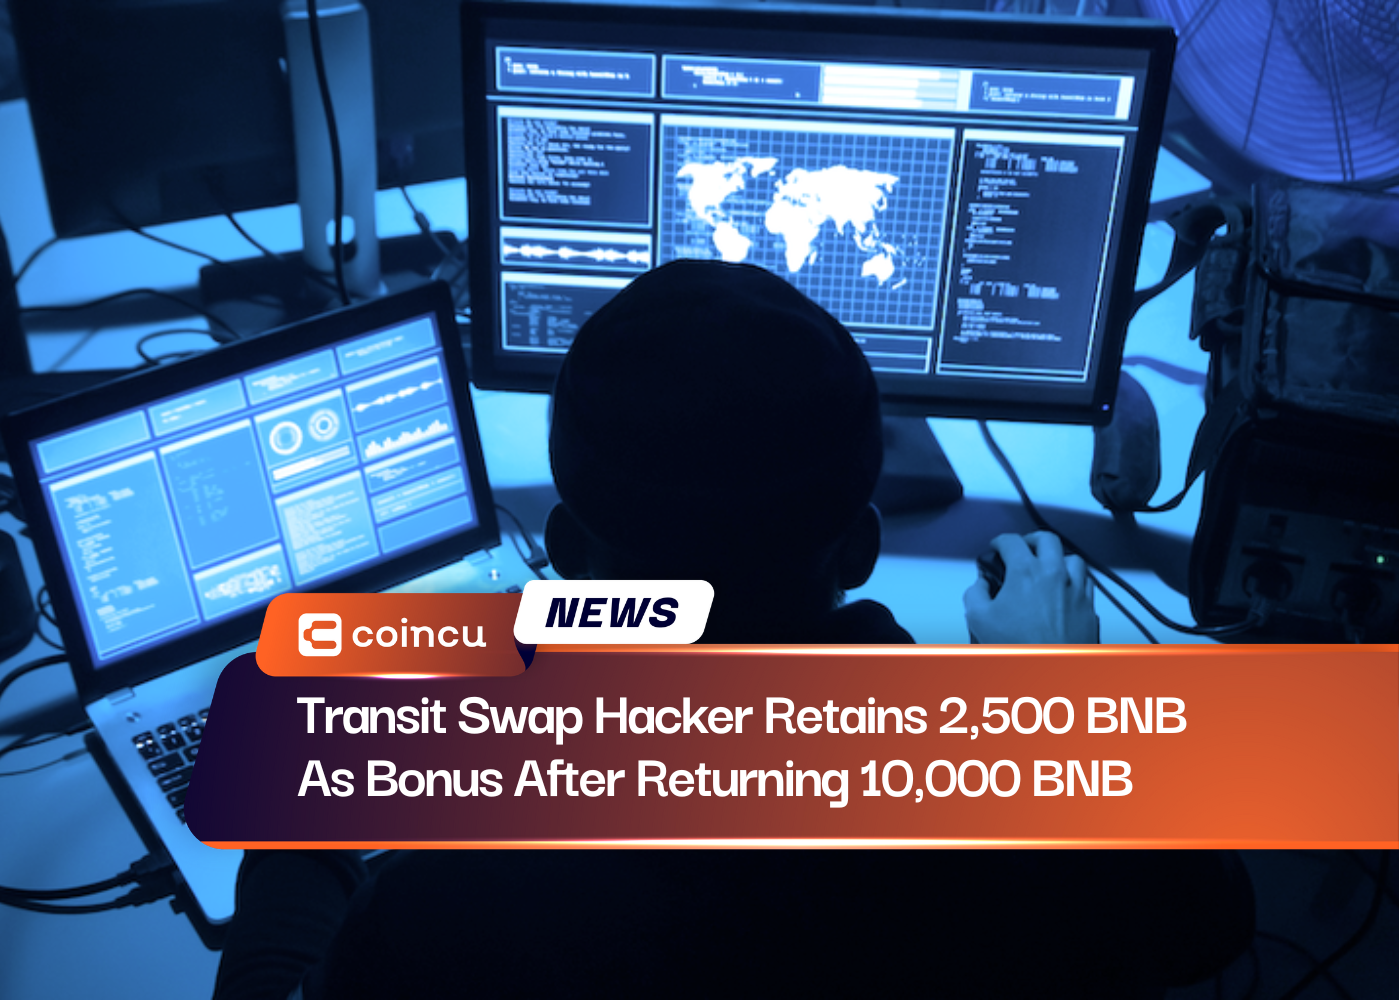 Transit Swap Hacker Retains 2,500 BNB As Bonus After Returning 10,000 BNB